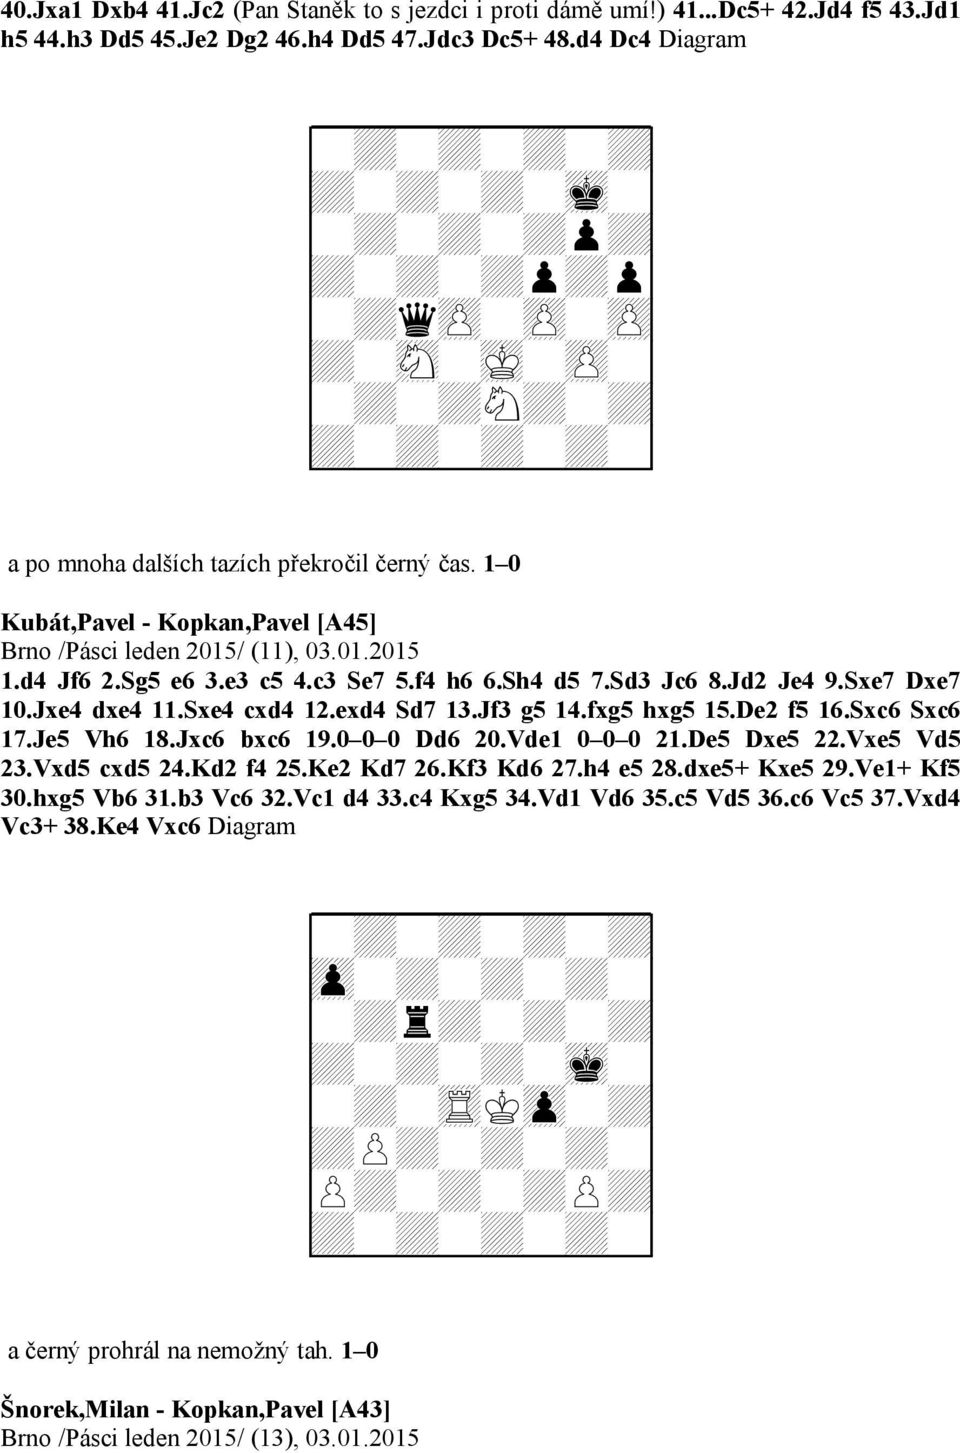 1 0 Kubát,Pavel - Kopkan,Pavel [A45] Brno /Pásci leden 2015/ (11), 03.01.2015 1.d4 Jf6 2.Sg5 e6 3.e3 c5 4.c3 Se7 5.f4 h6 6.Sh4 d5 7.Sd3 Jc6 8.Jd2 Je4 9.Sxe7 Dxe7 10.Jxe4 dxe4 11.Sxe4 cxd4 12.